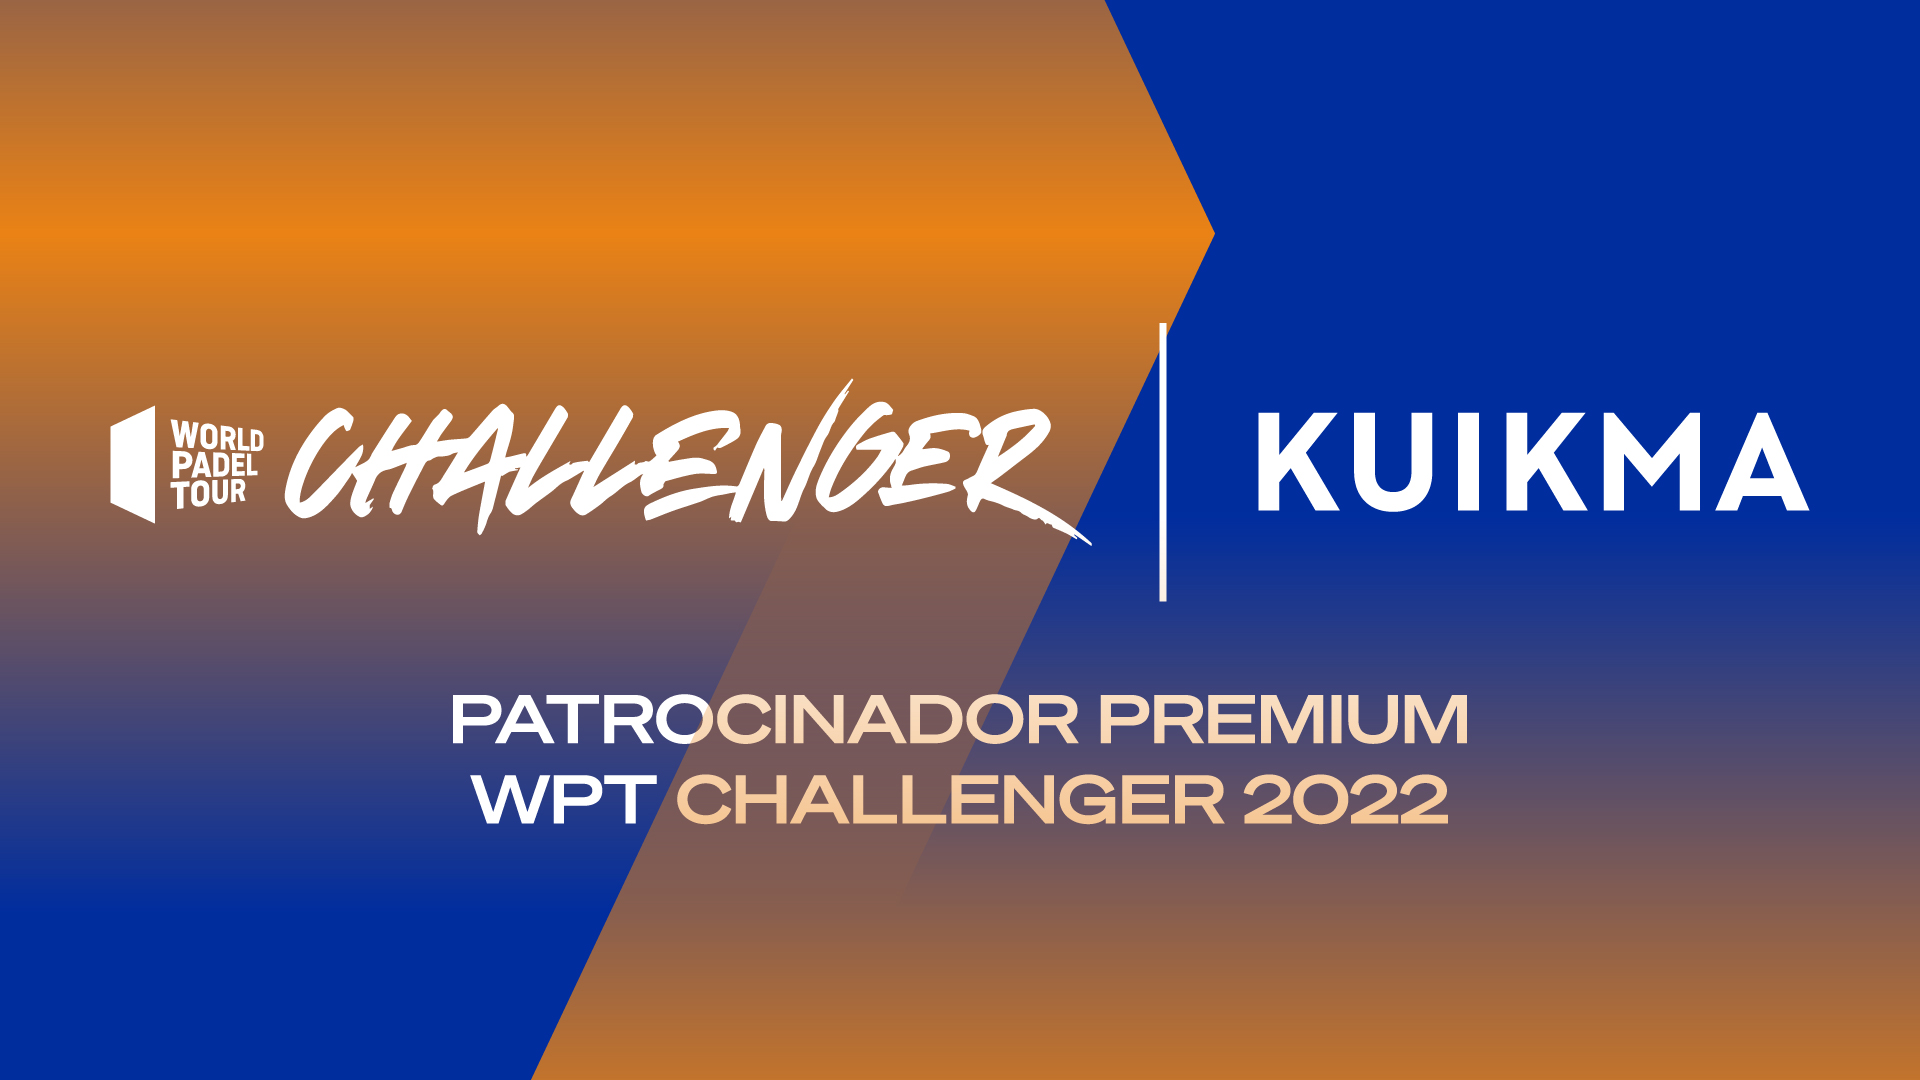 WPT-Challenger-2022-Kuikma-blog